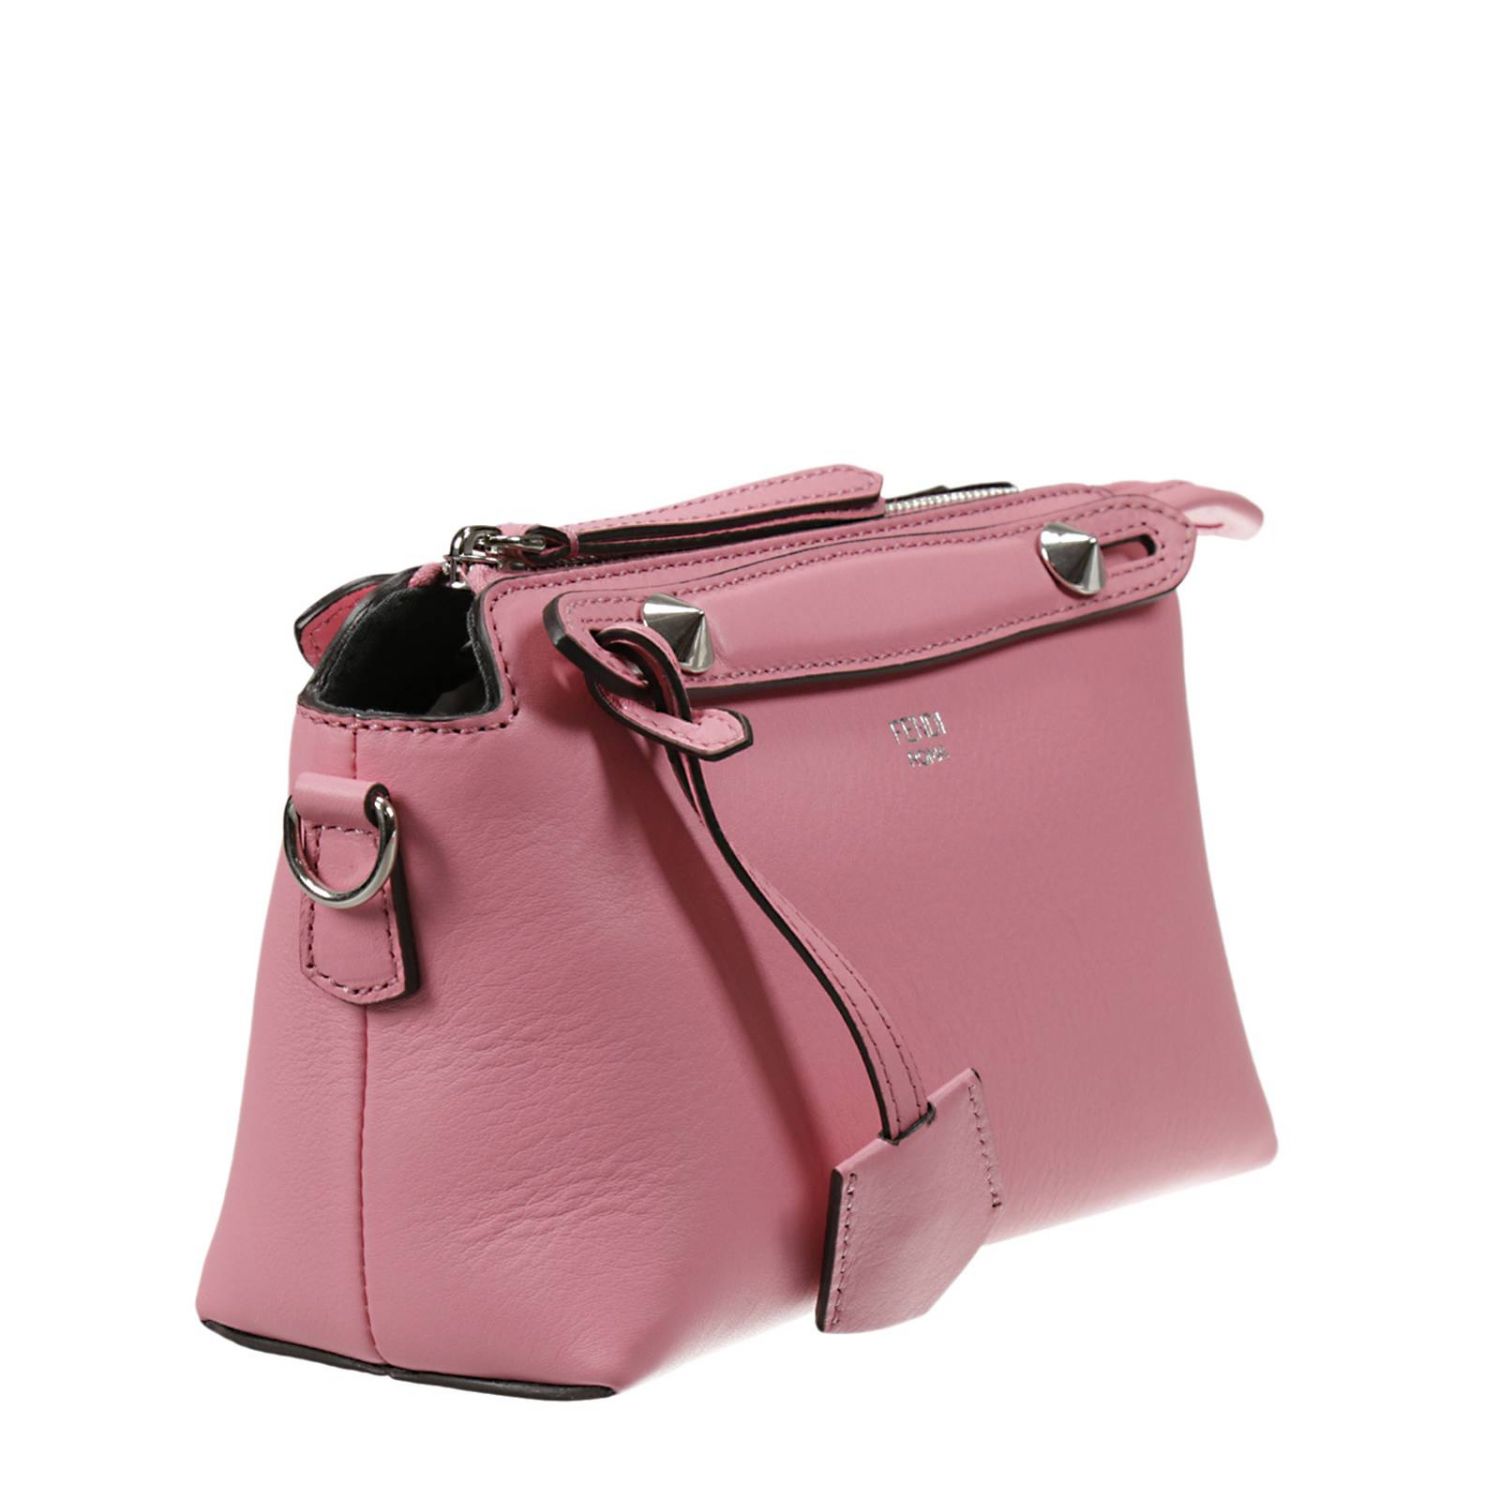 Fendi Outlet: | Shoulder Bag Fendi Women Pink | Shoulder Bag Fendi